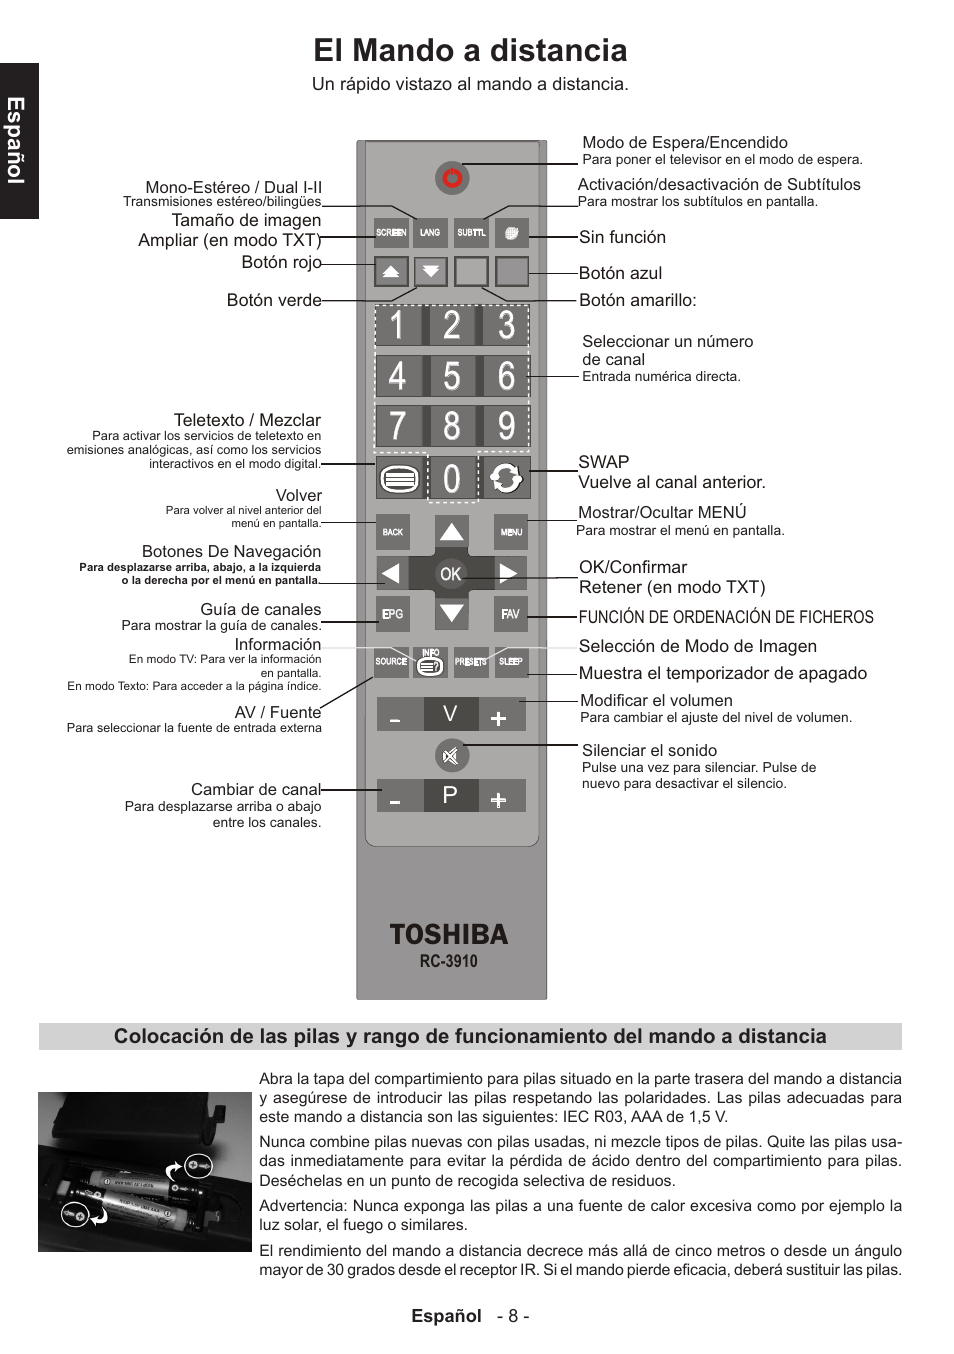 El mando a distancia, Toshiba, Español, Toshiba BL712 Manual del usuario, Página 9 / 46